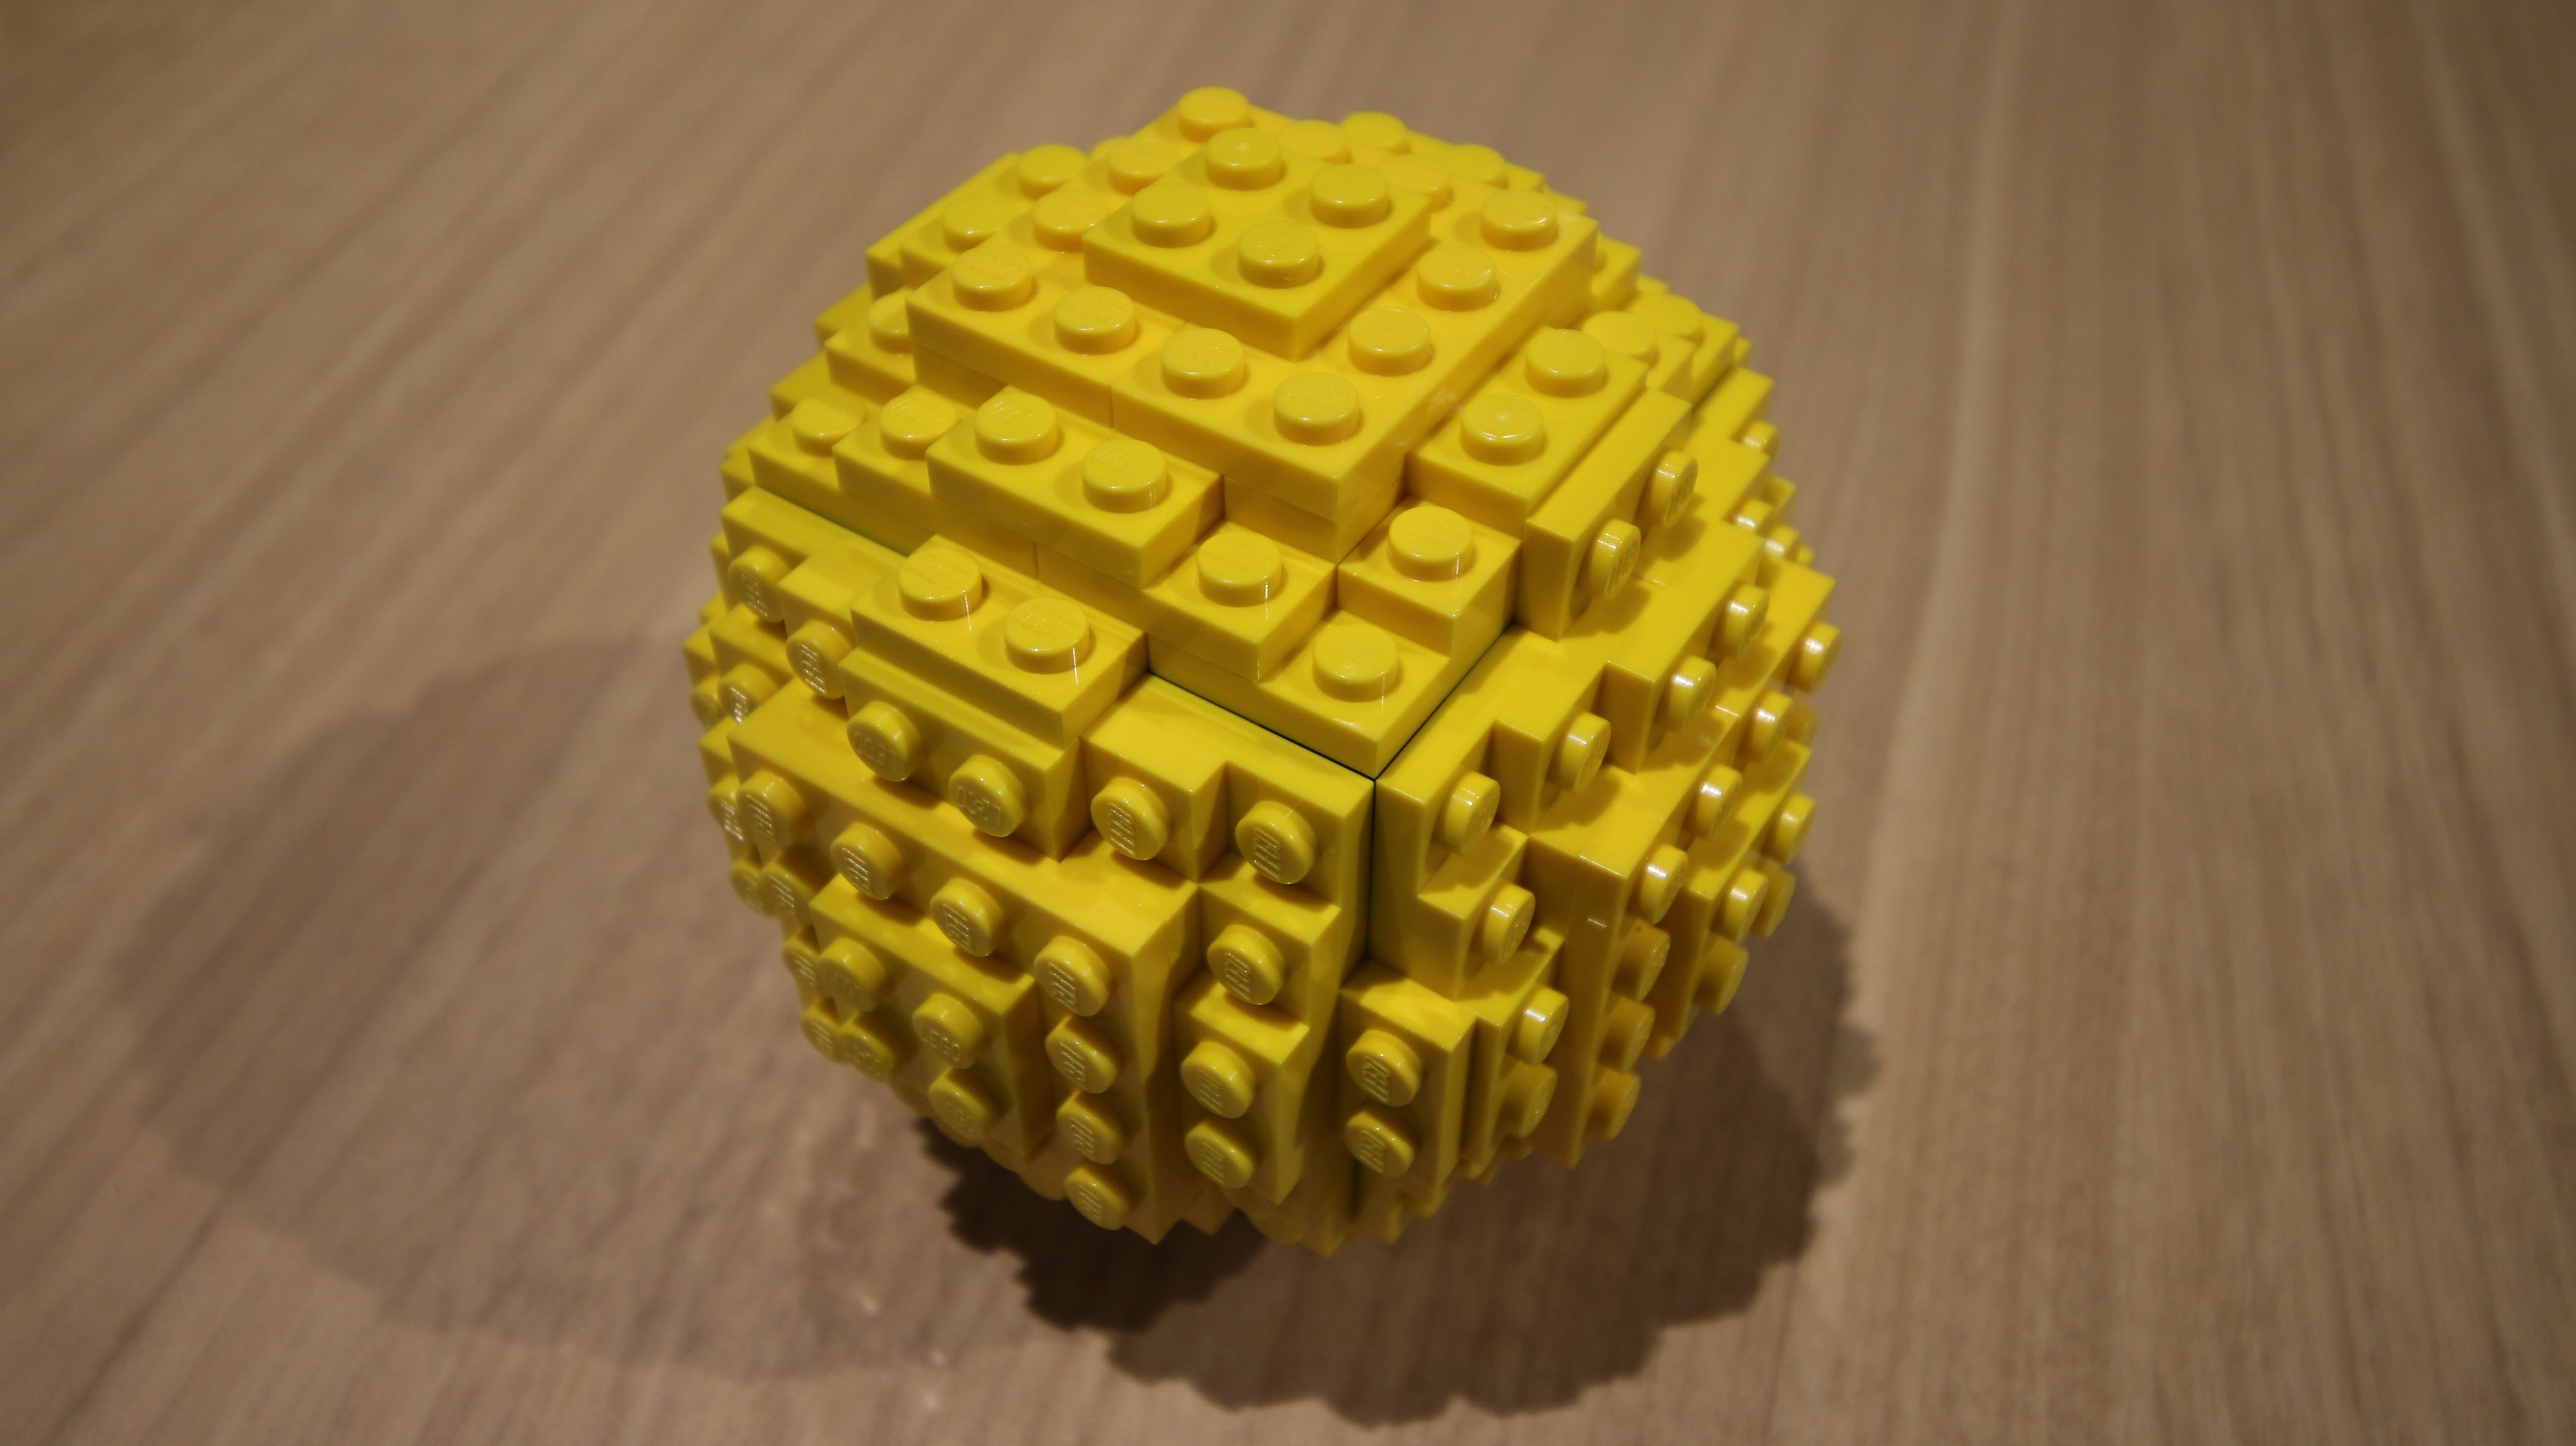 Lego で 球 ボール を作ったことはありますか 福本研究室